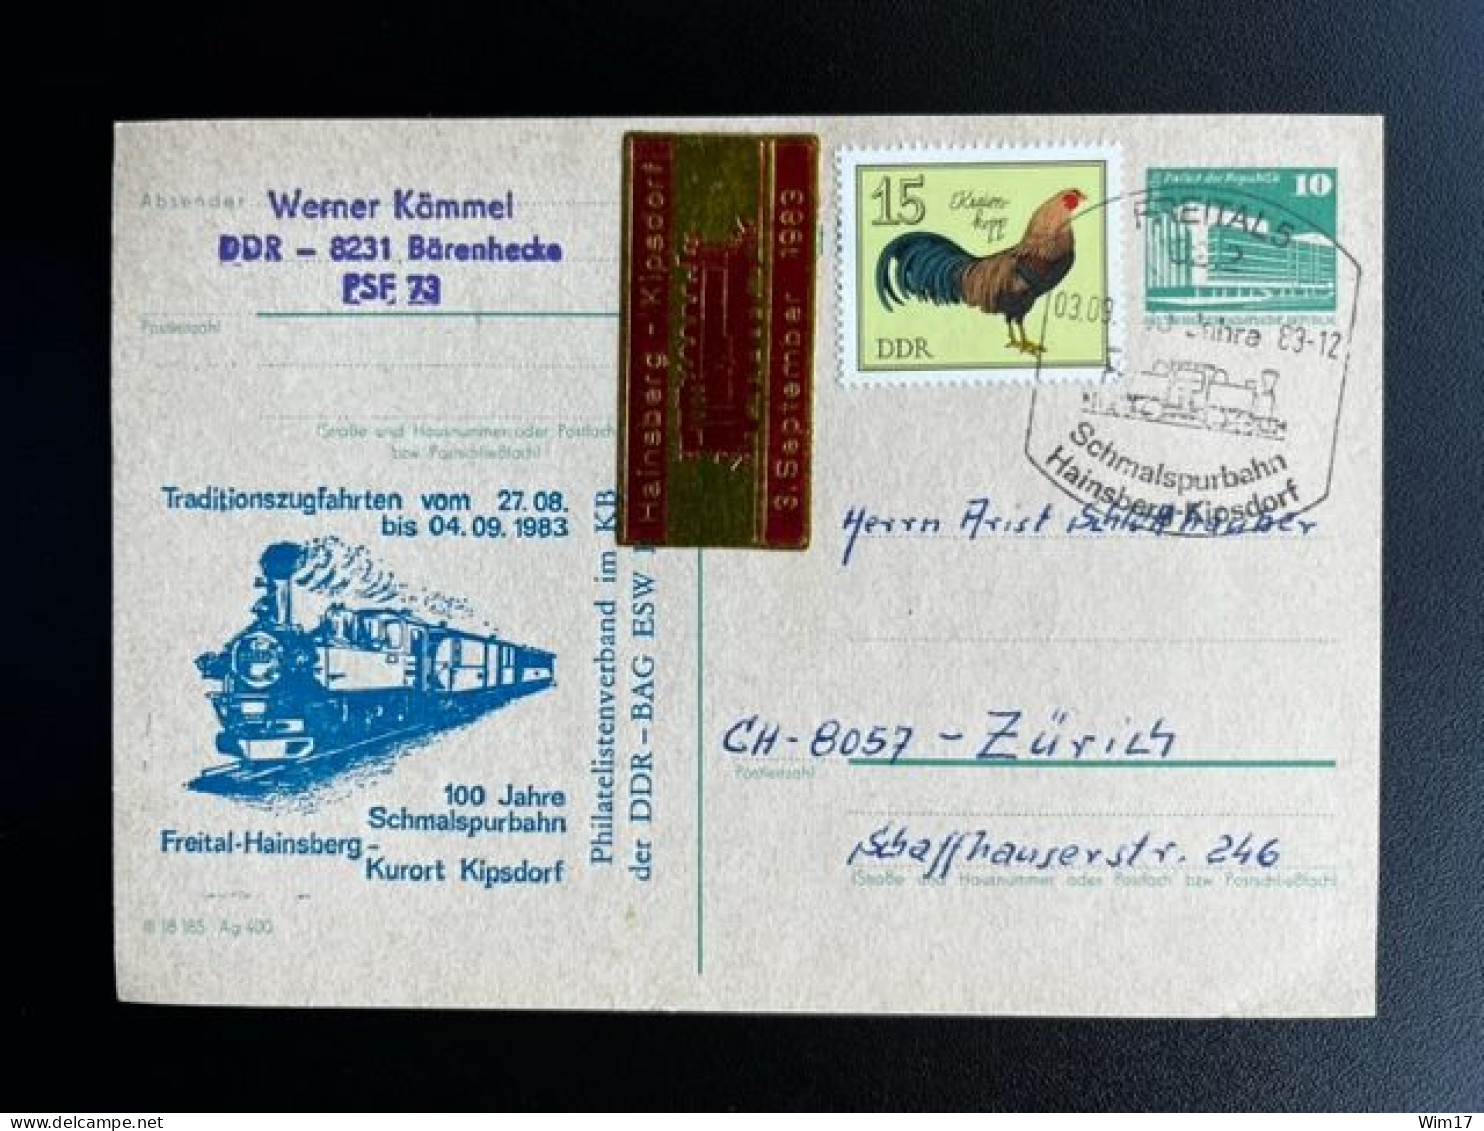 EAST GERMANY DDR 1983 POSTCARD FREITAL TO ZURICH 03-09-1983 OOST DUITSLAND DEUTSCHLAND TRAINS - Postkarten - Gebraucht